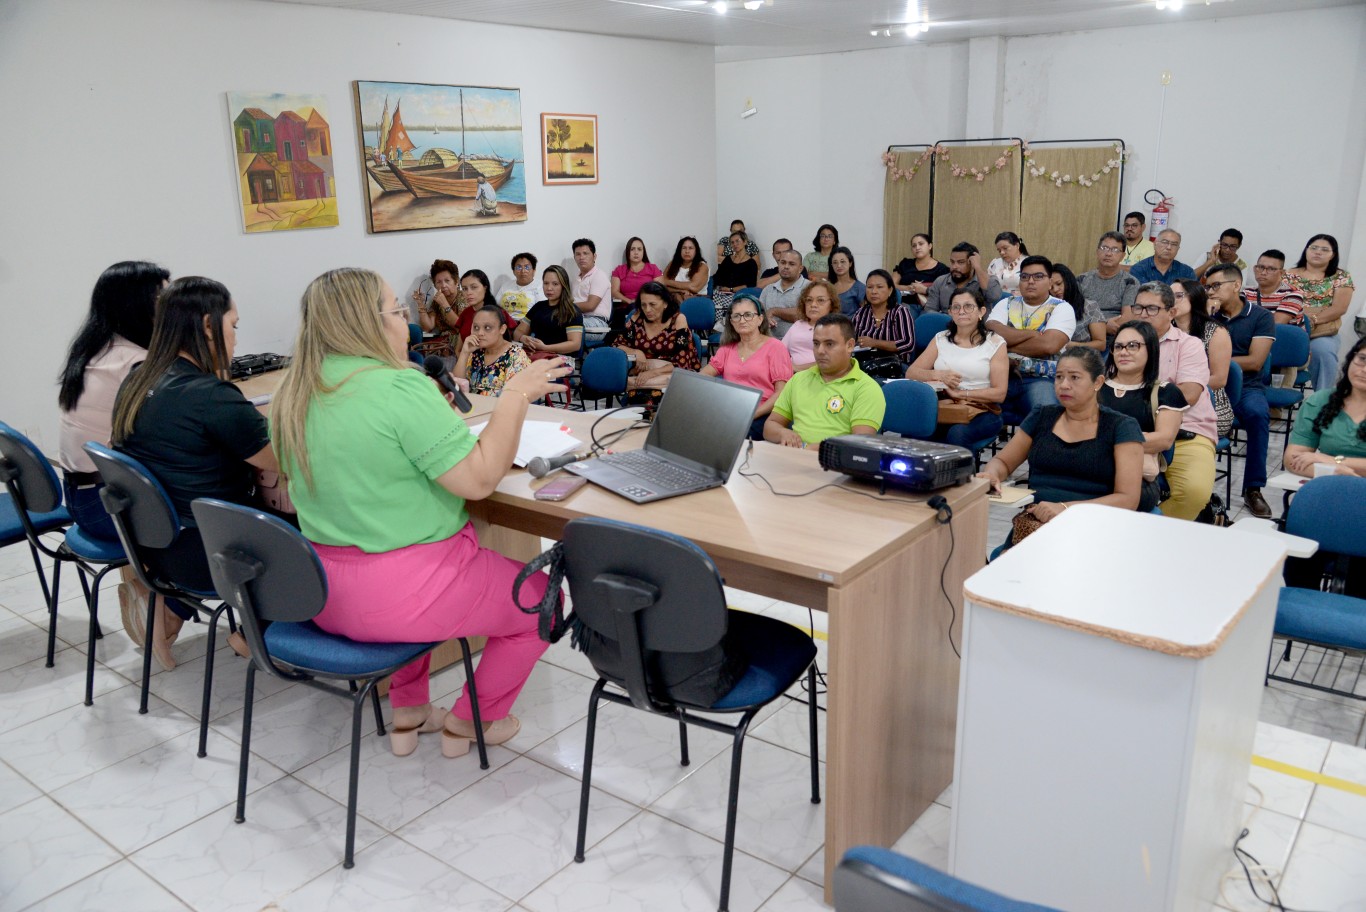 Votação para Bruno Diferente no Pará